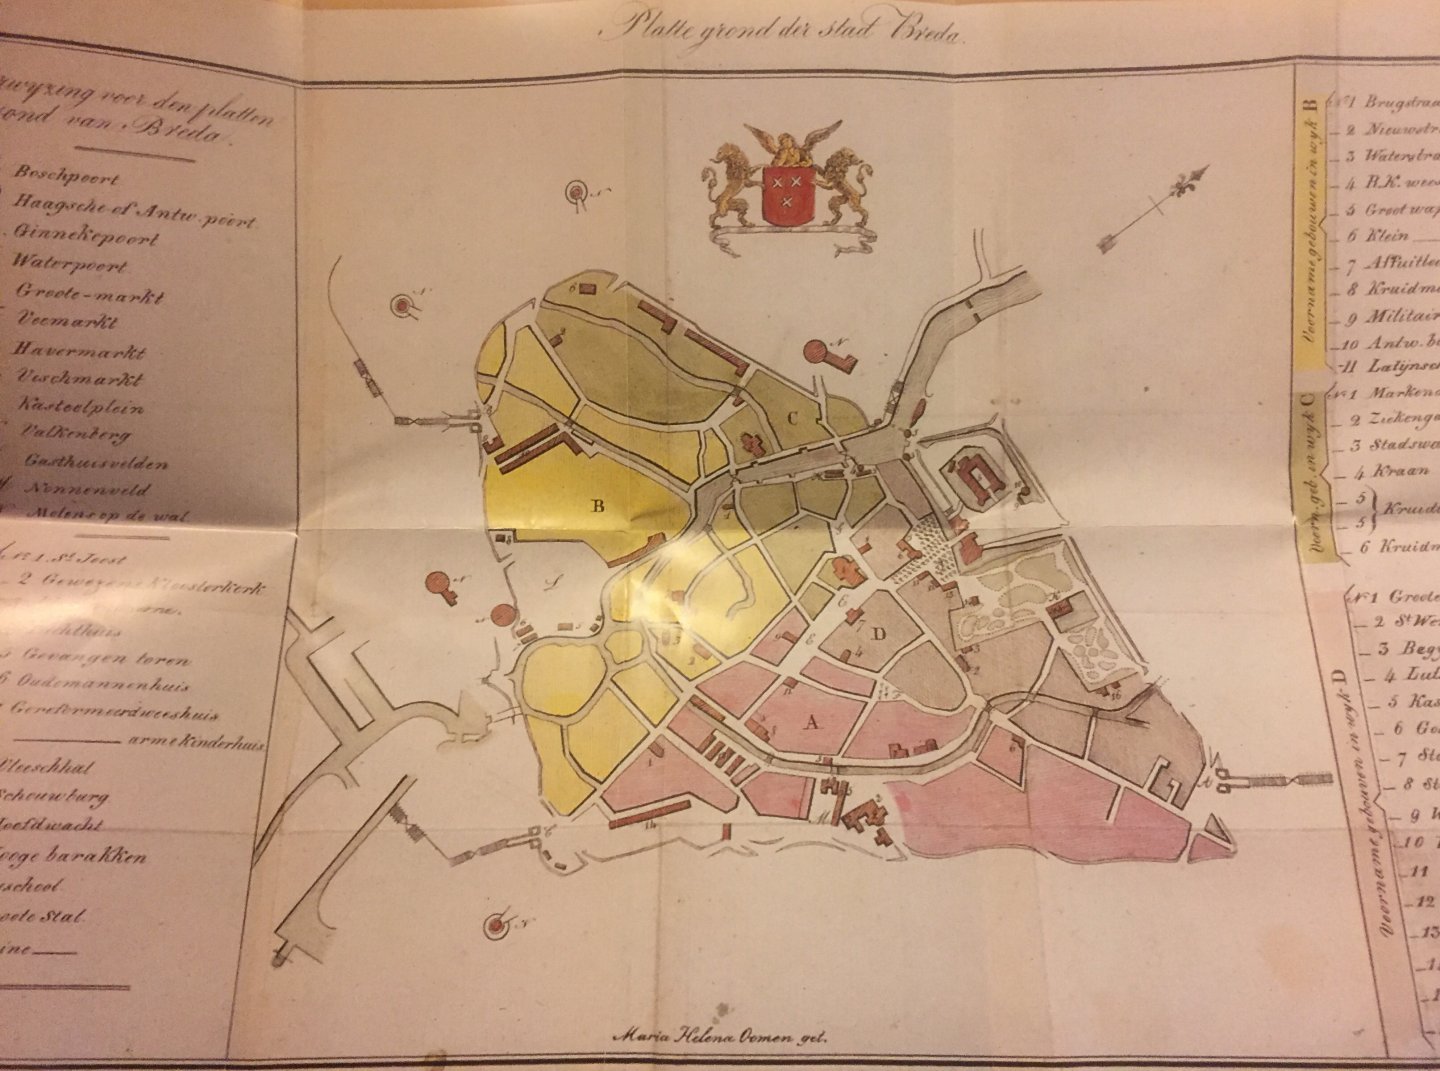 Wenning, C.H.   Pol, Pierre van der. - Breda anno 1823. Aardrijkskundige Beschrijving van de stad Breda voor kinderen. Historisch schoolboekje met bijzondere kaart.